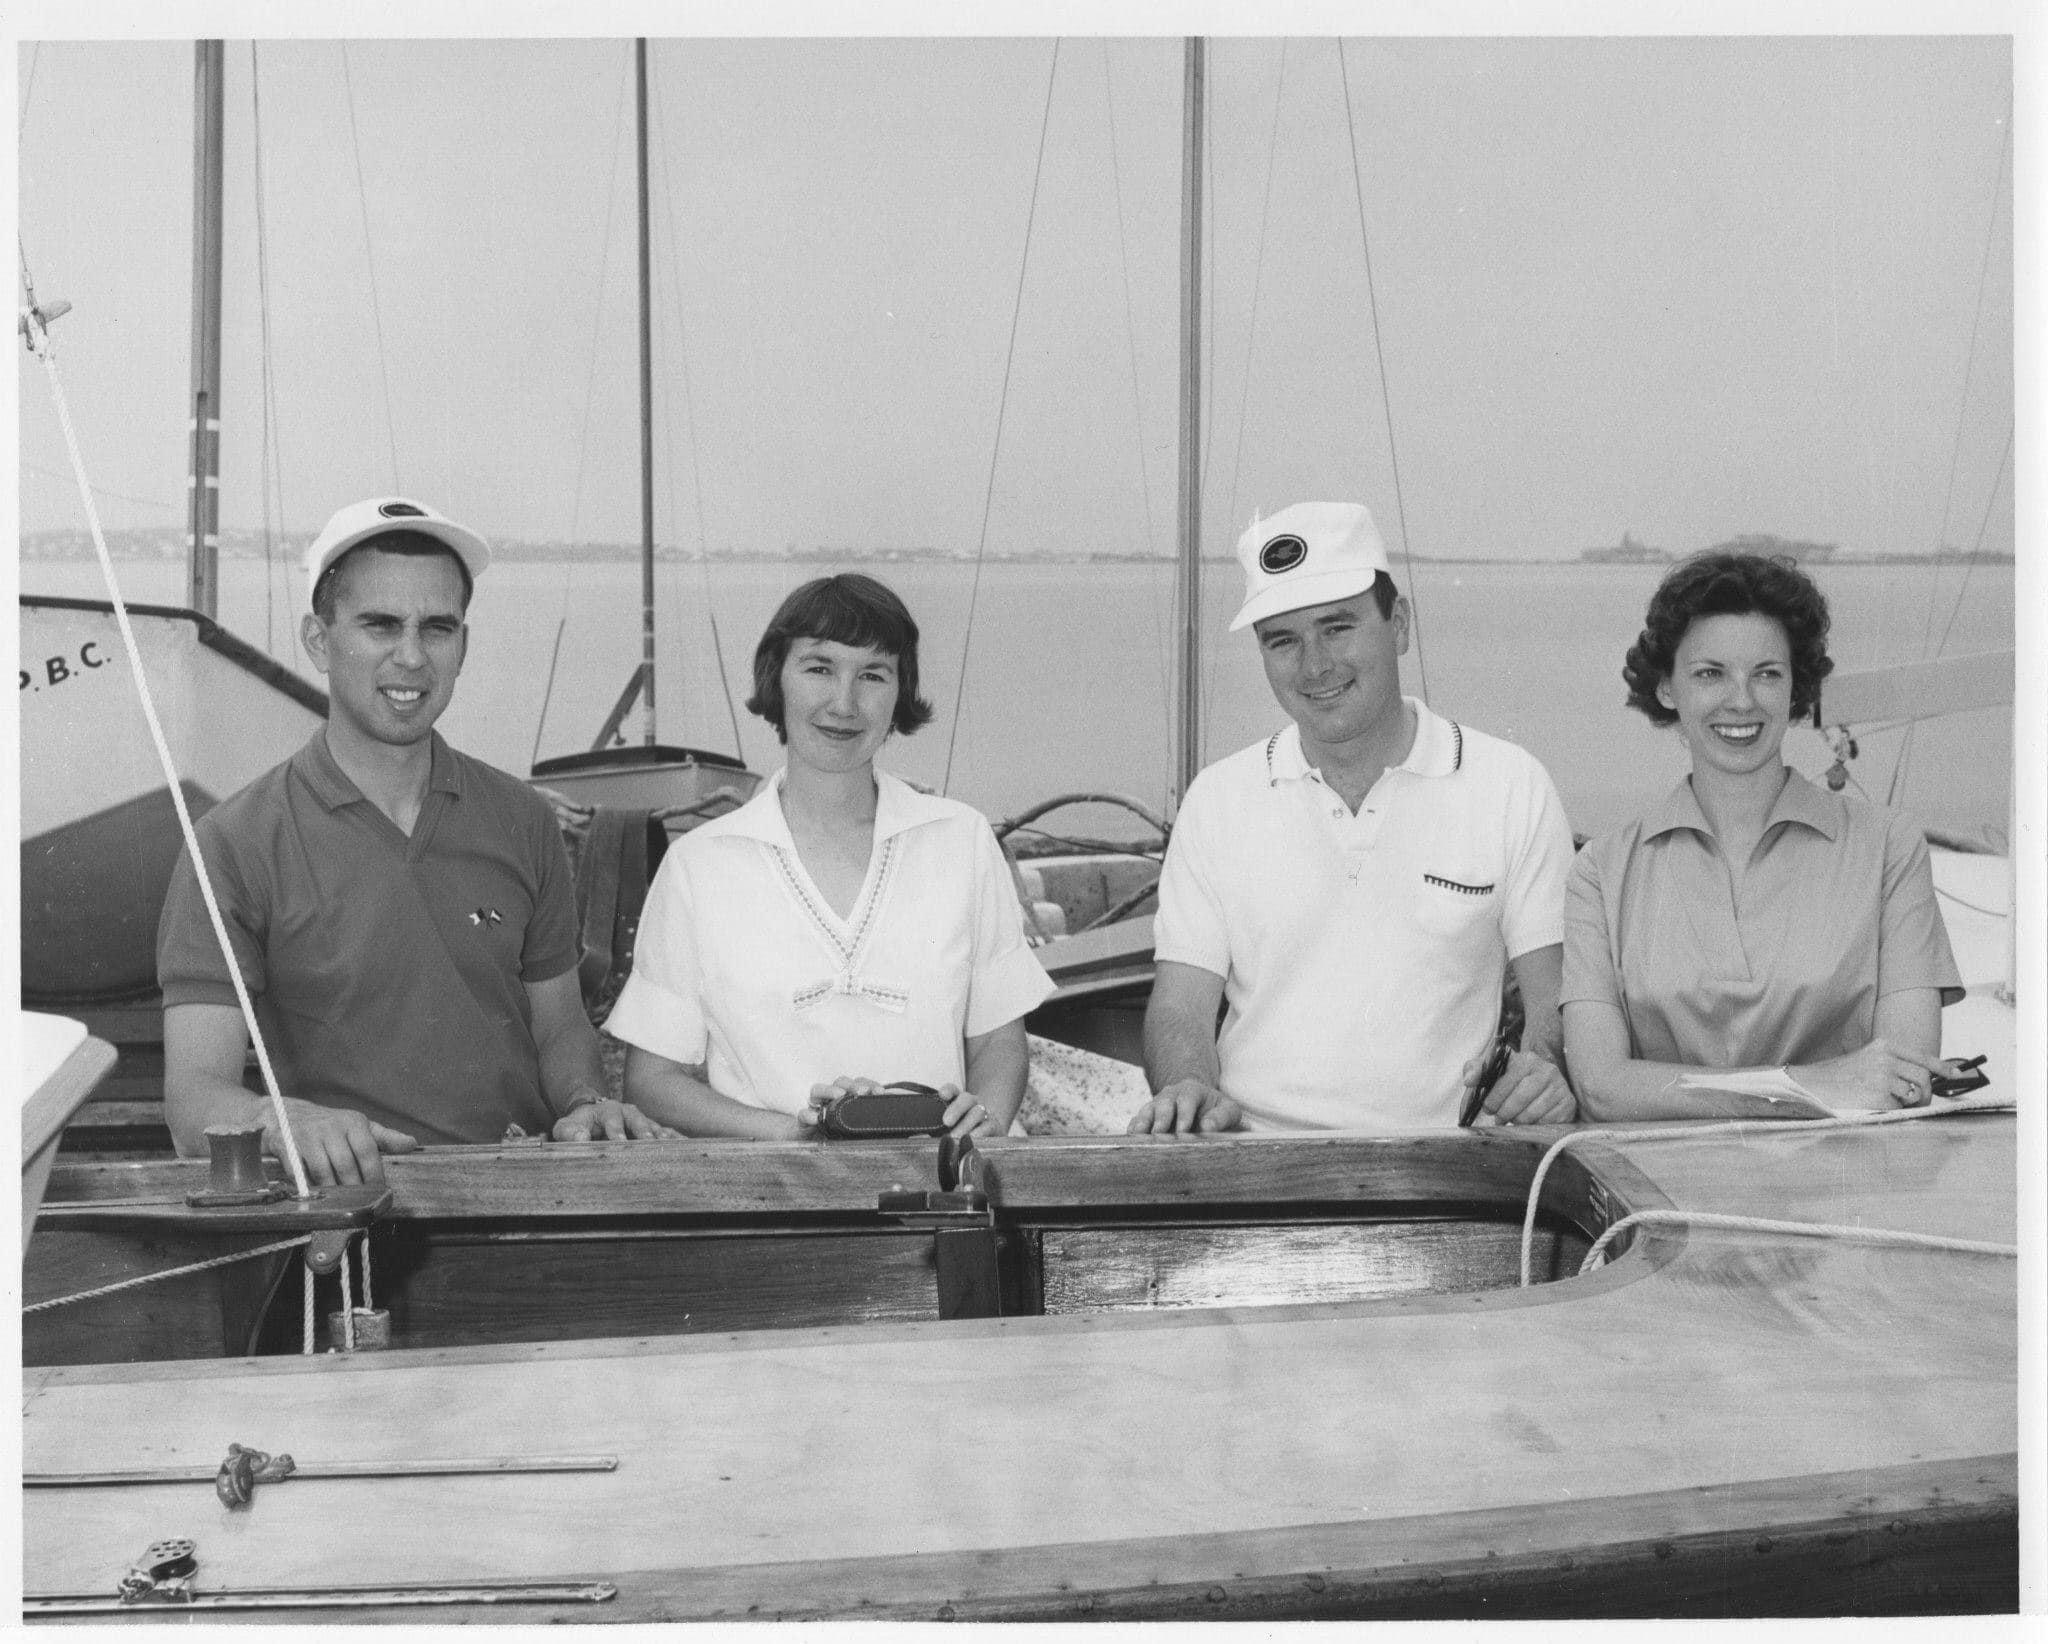 1960 Bermuda Race Week Image